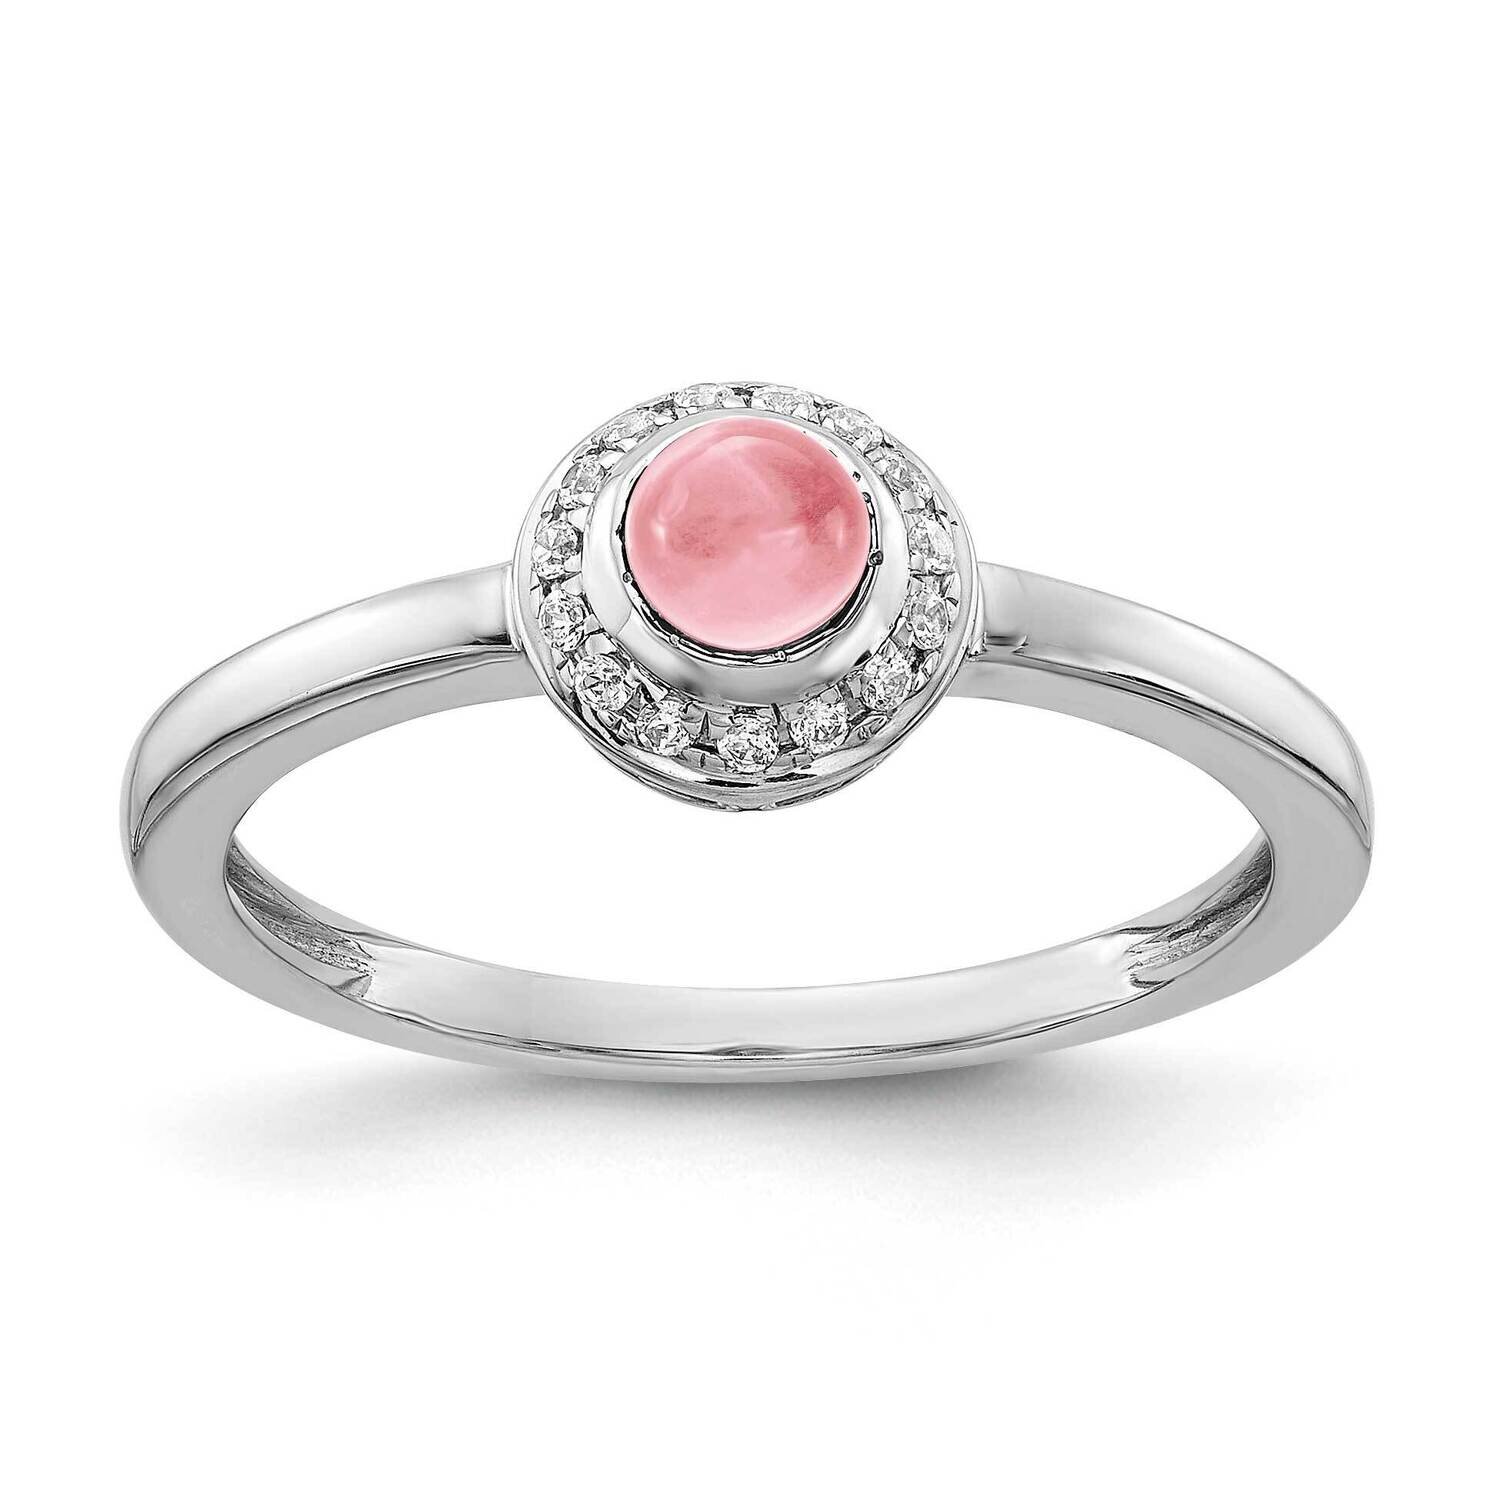 Cabochon Pink Tourmaline Ring 14k White Gold Diamond RM4030-PT-025-WA